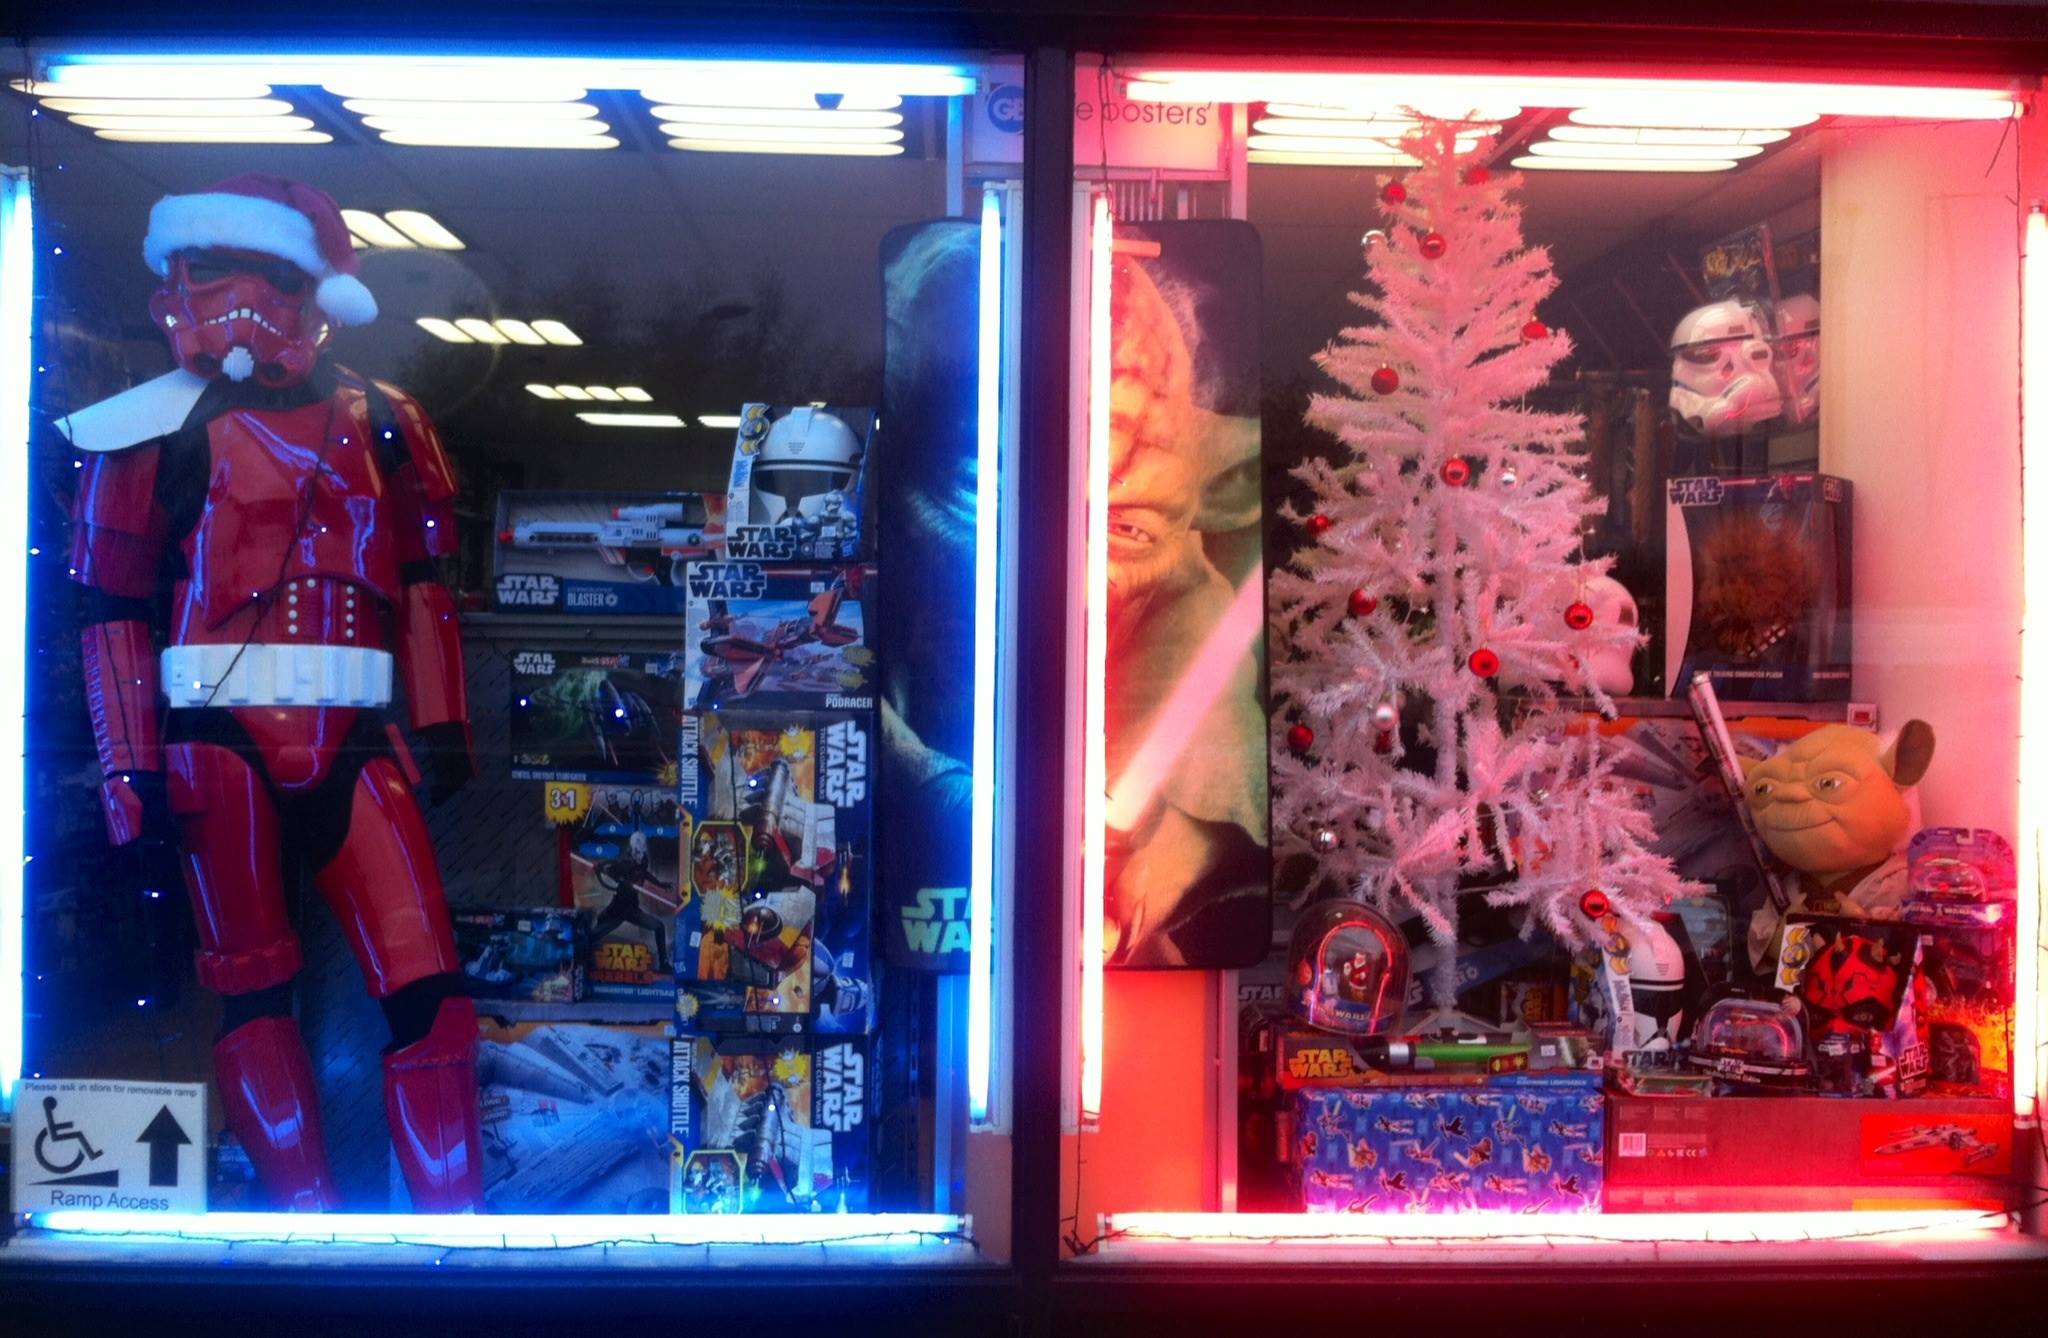 Star Wars Shop at Christmas